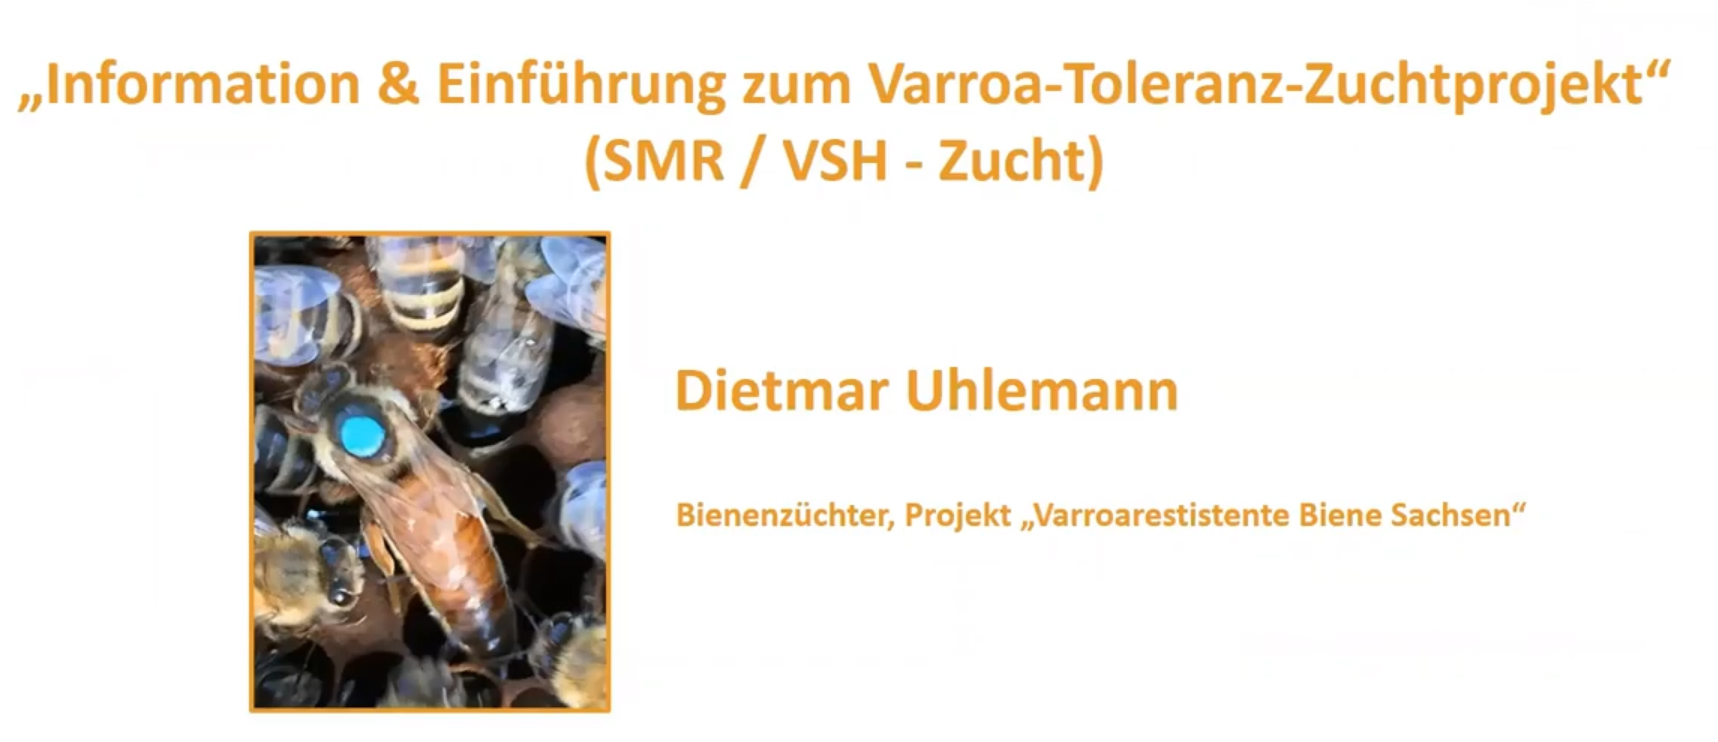 Information & Einführung zum Varroa-Toleranz-Zuchtprojekt (SMR / VSH - Zucht